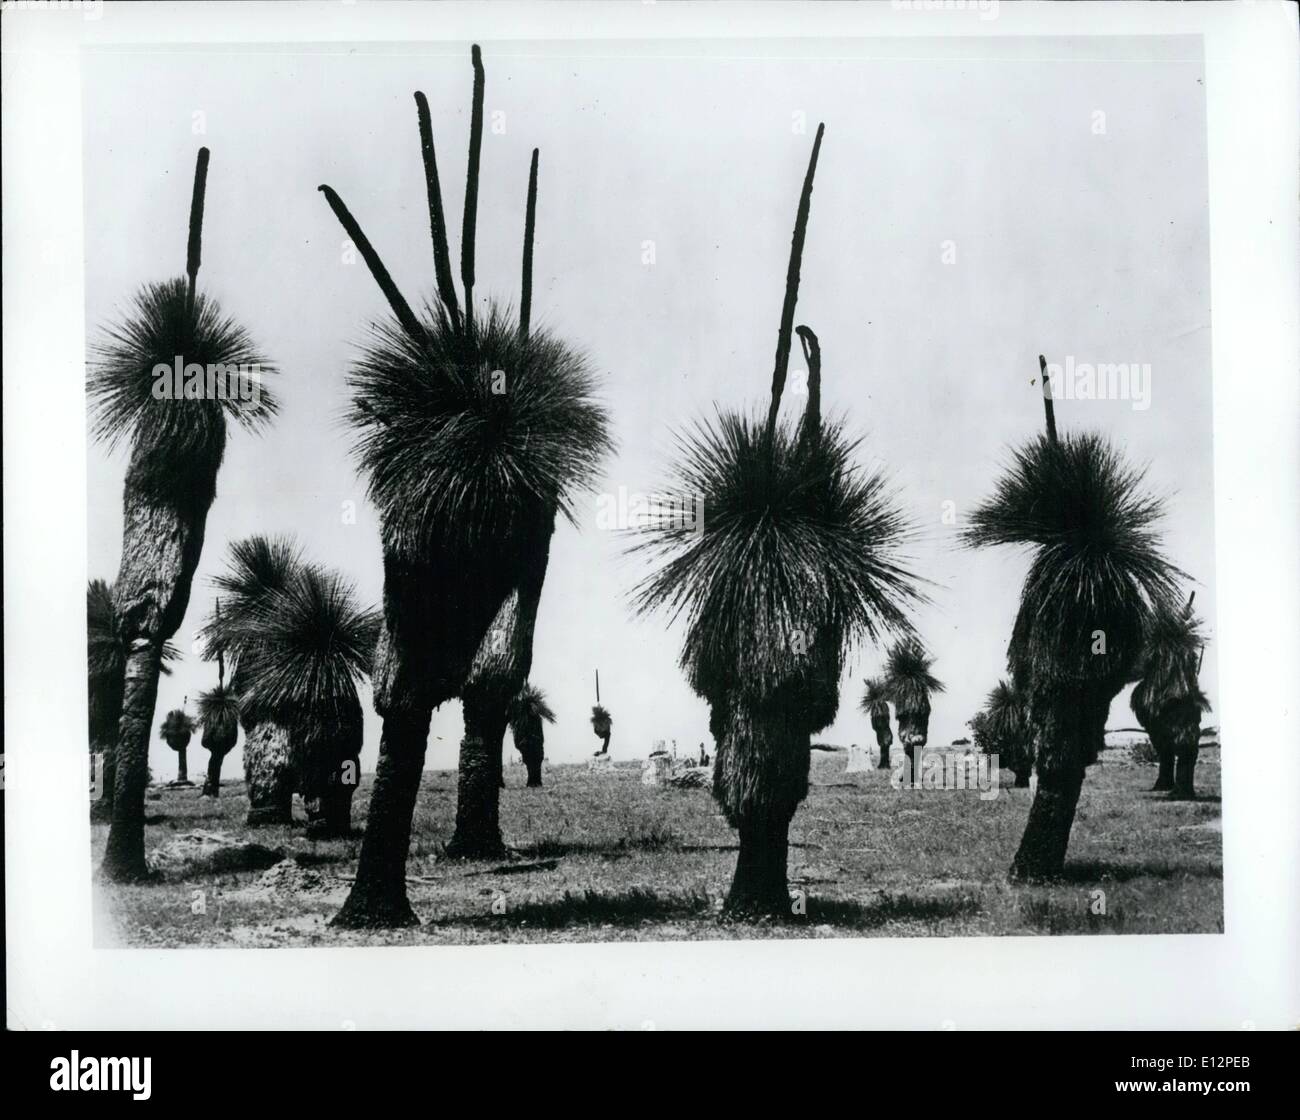 24 février 2012 - L'étrange : Ces excroissances perculiar à l'ouest de l'Australie sont connus que de l'herbe des arbres. Ils ne sont qu'une des nombreuses curiosités à visiter dans ce pays vaste et intéressant. Banque D'Images